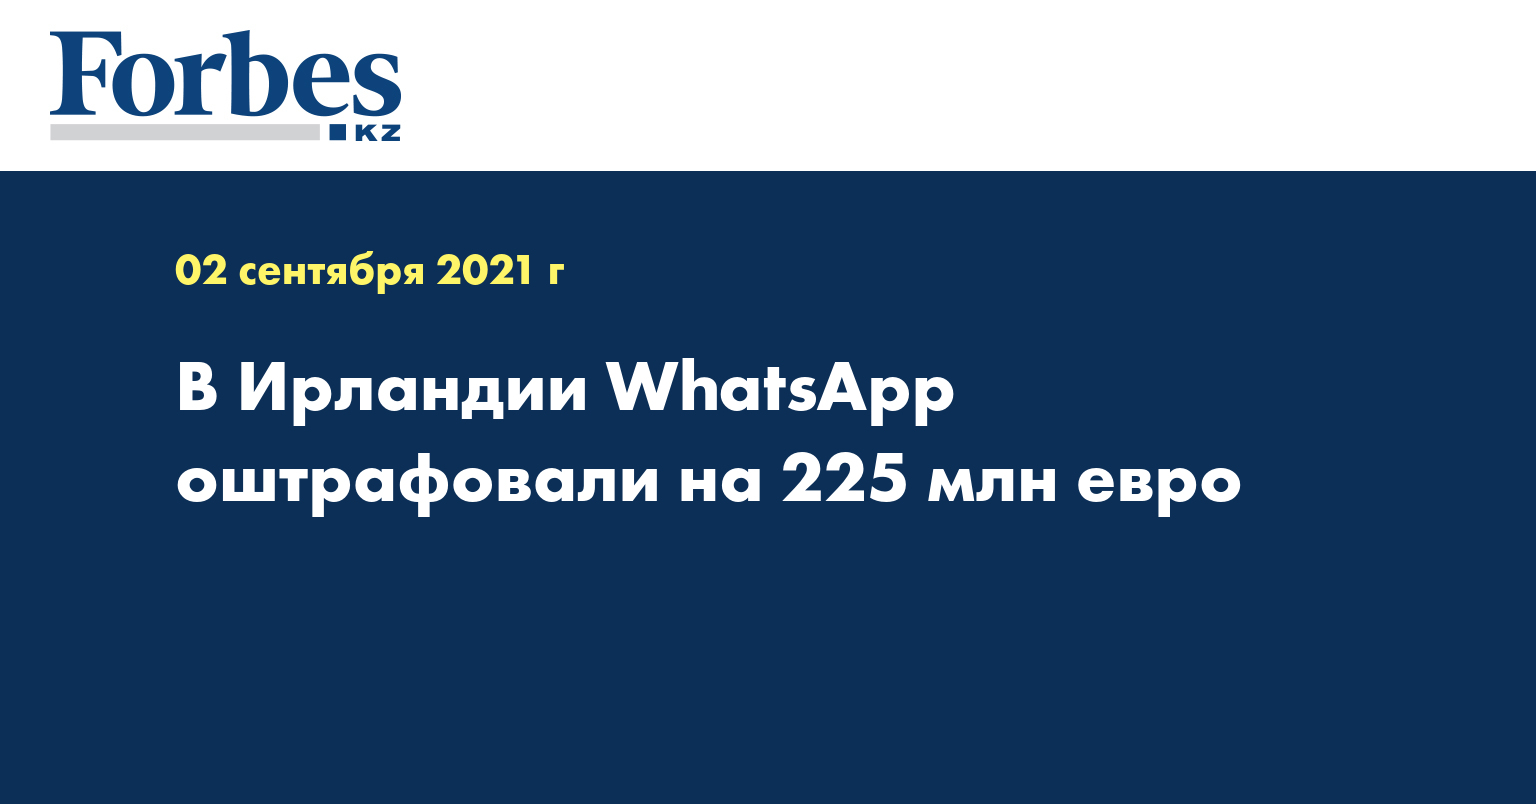 В Ирландии WhatsApp оштрафовали на 225 млн евро